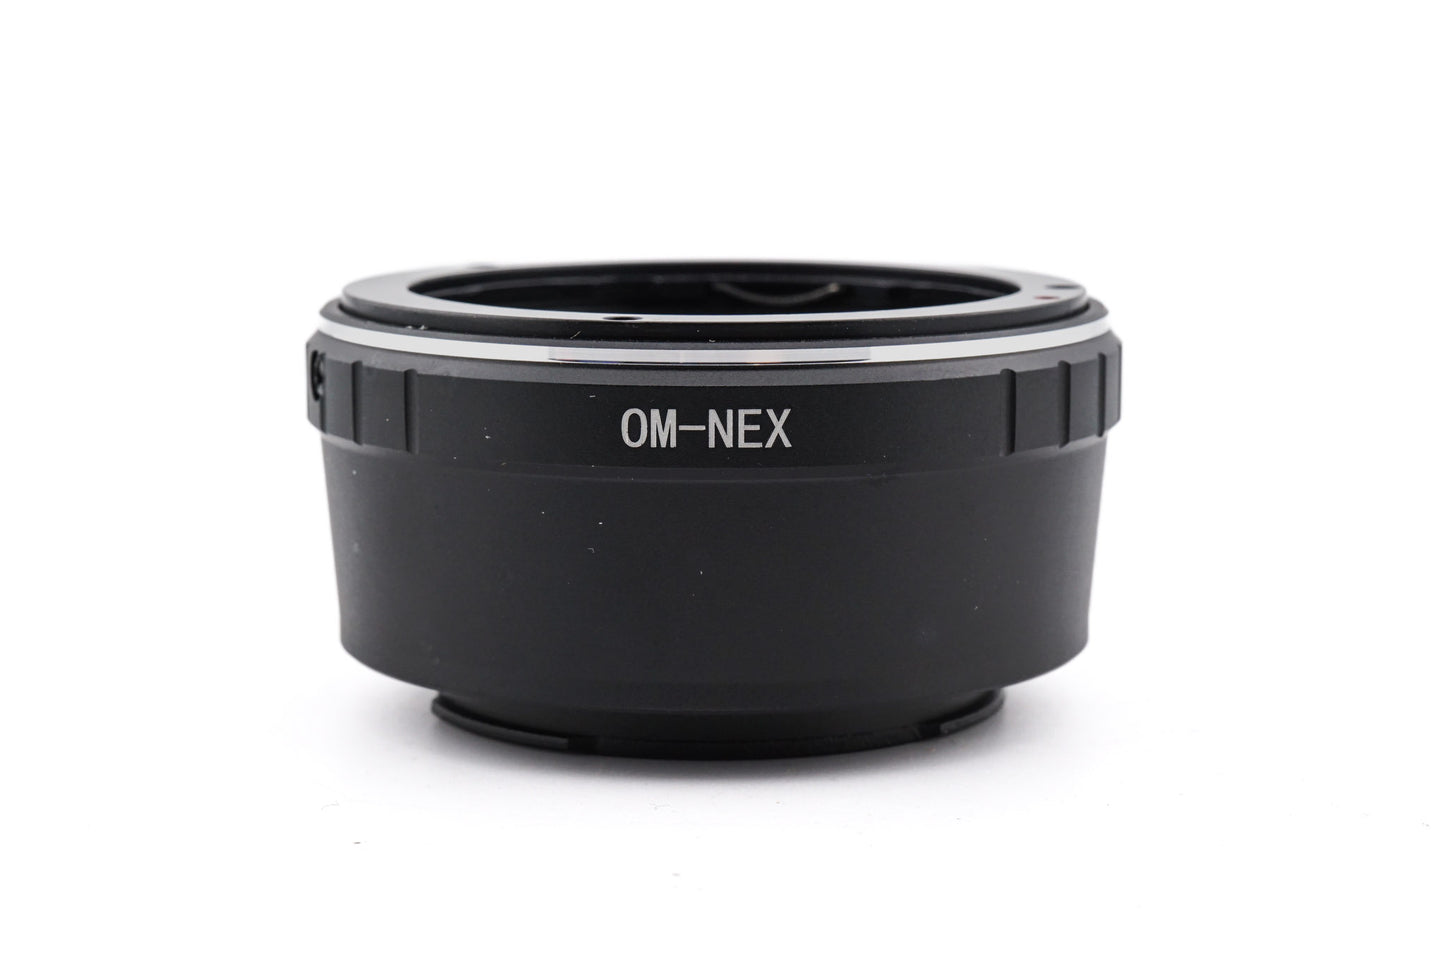 Generic Olympus OM - Sony E / FE (OM - NEX) Adapter - Lens Adapter